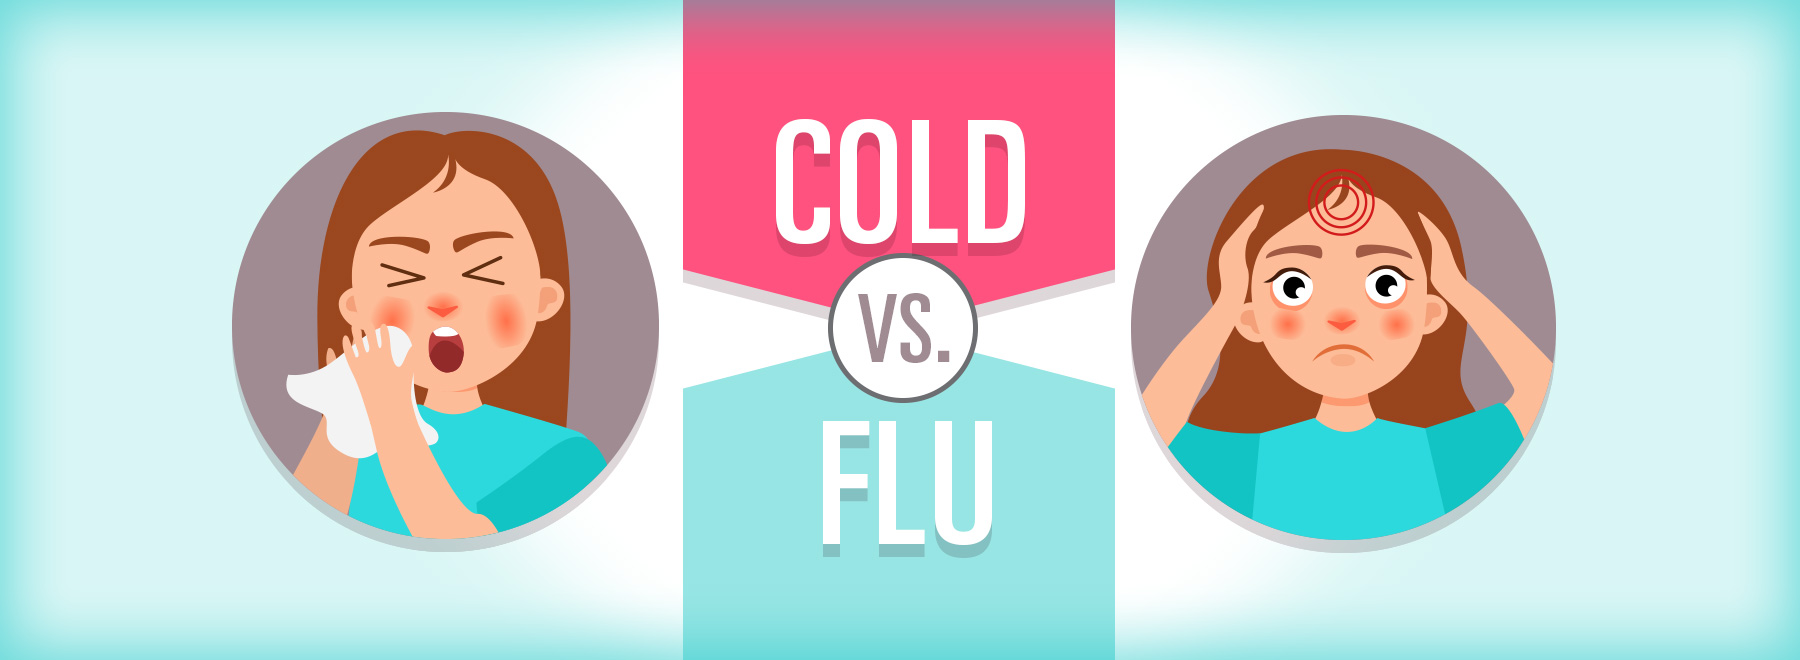 Cold vs flu graphic